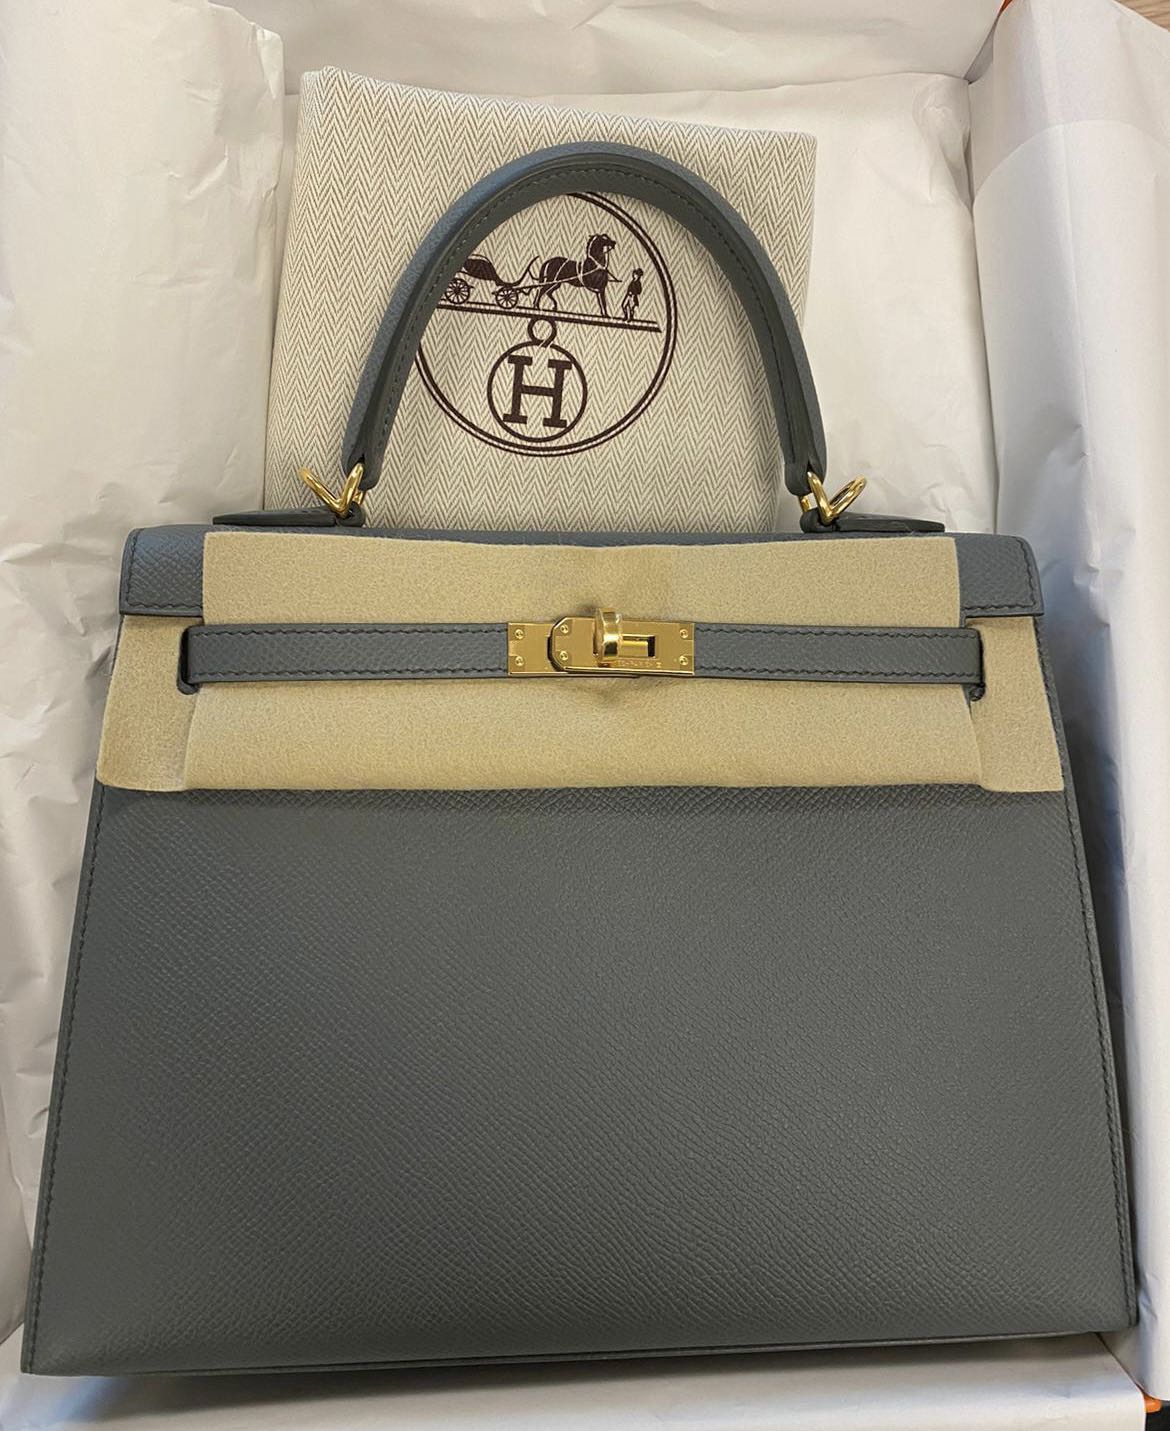 Replica Hermes Kelly 25cm Sellier Bag in Vert Amande Epsom